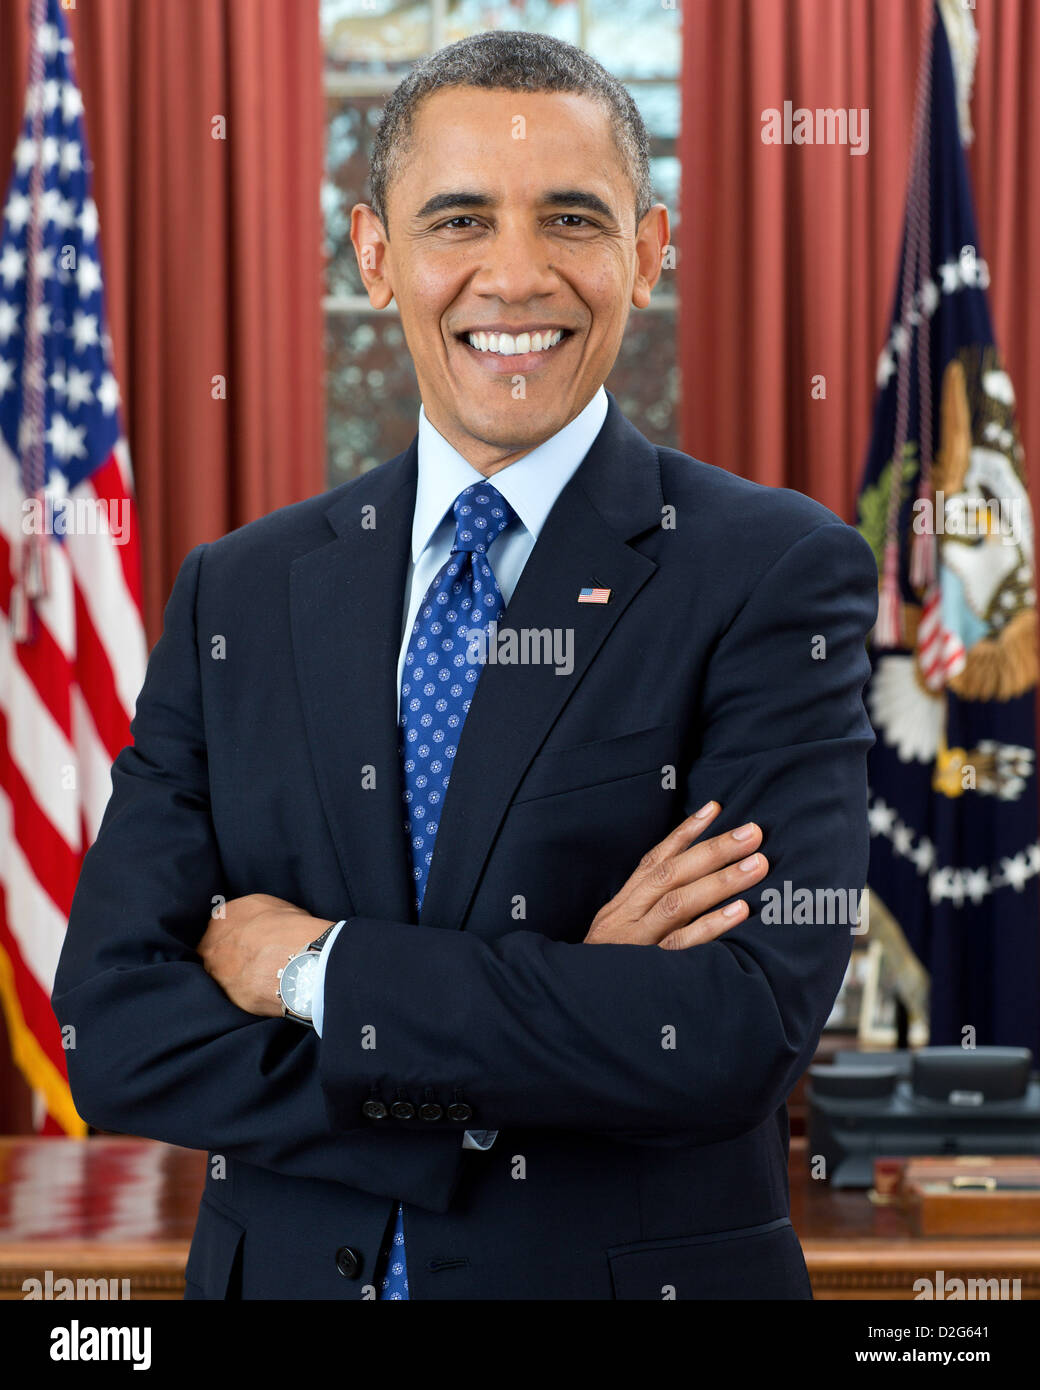 Le président Barack Obama, 44e président des États-Unis. Photo officielle dans le bureau ovale, le 6 décembre 2012. Banque D'Images